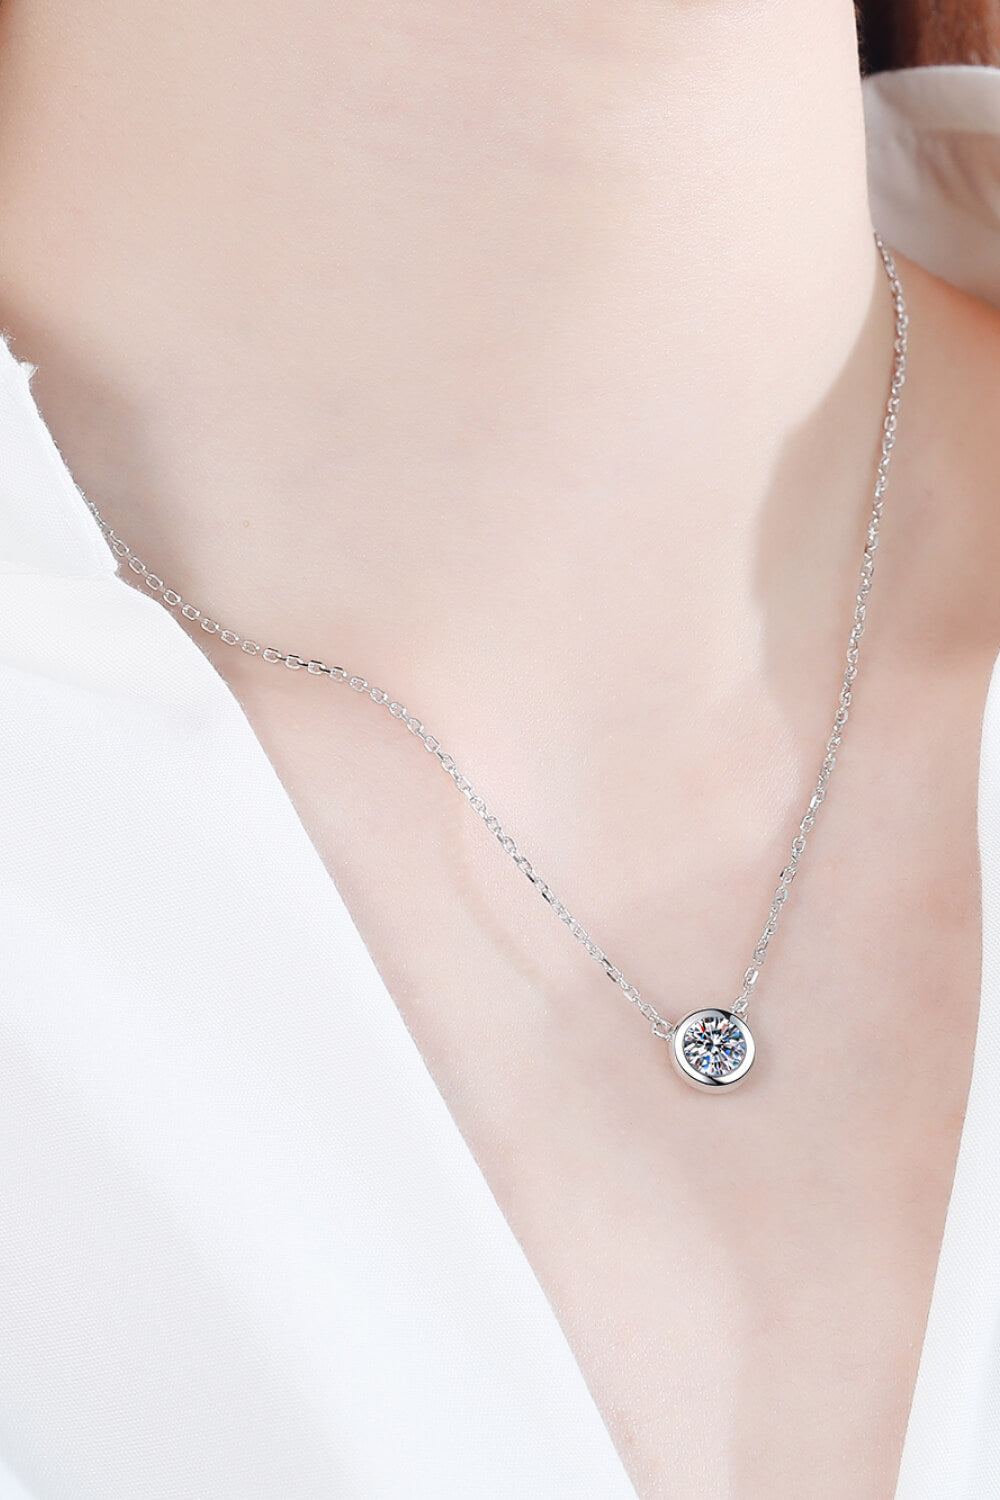 Moissanite Round Pendant Chain Necklace - DromedarShop.com Online Boutique